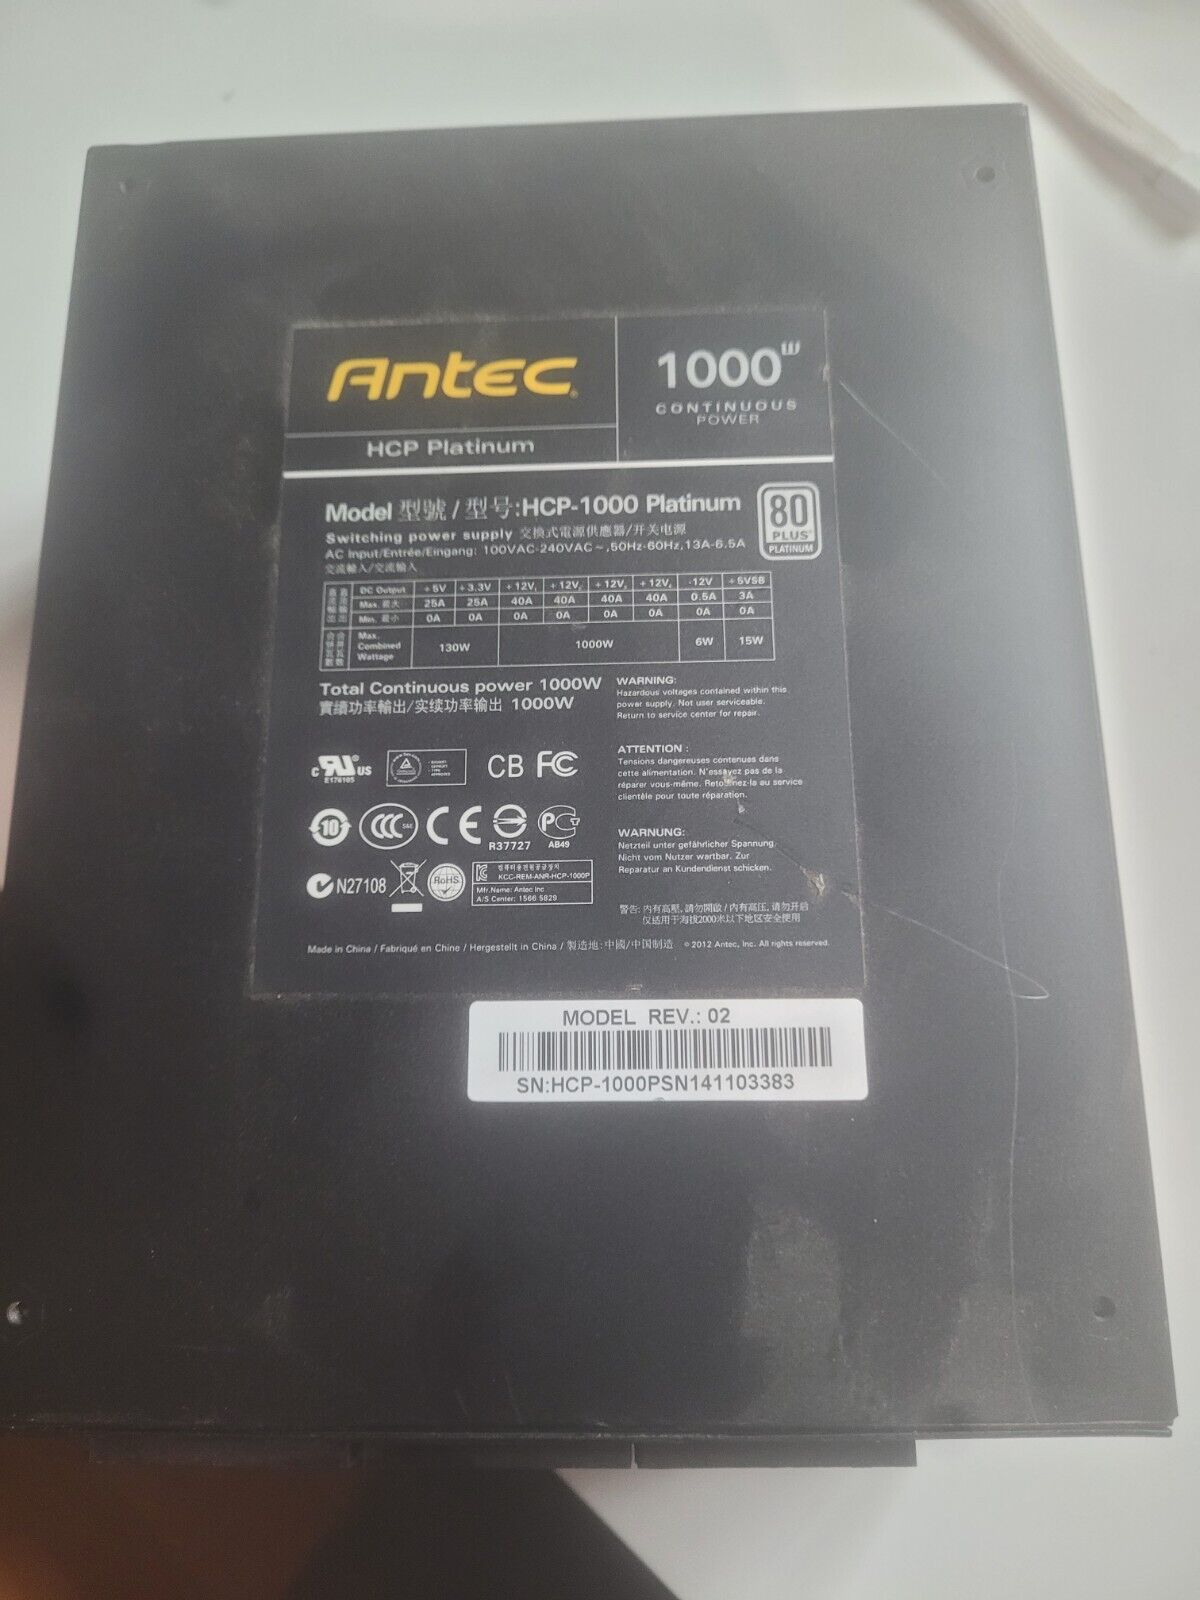 ANTEC 1000W HCP Platinum Model Rev 02